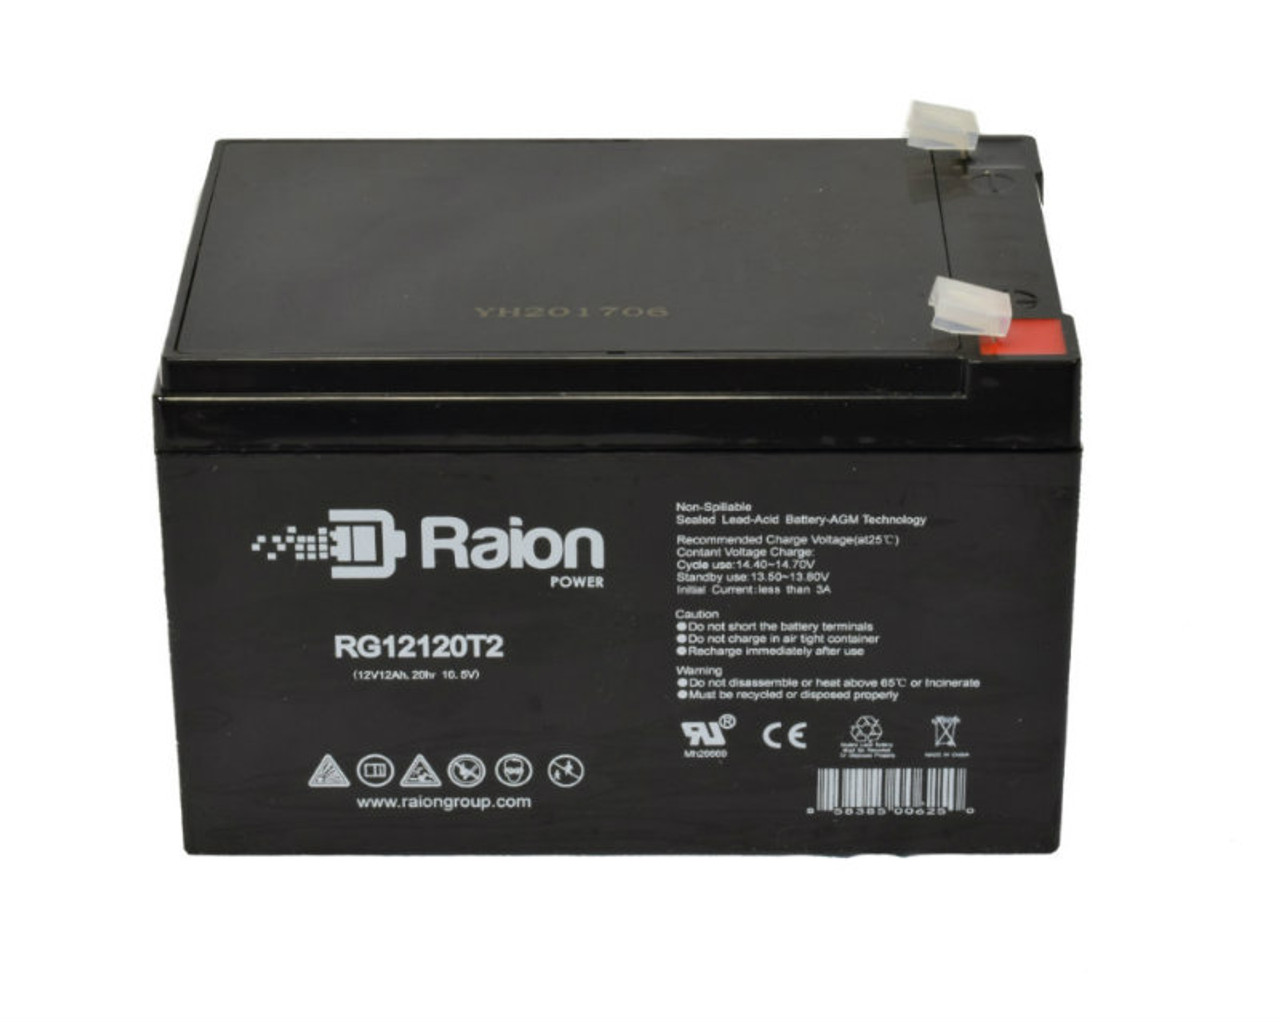 Raion Power RG12120T2 SLA Battery for SigmasTek SP12-15HR